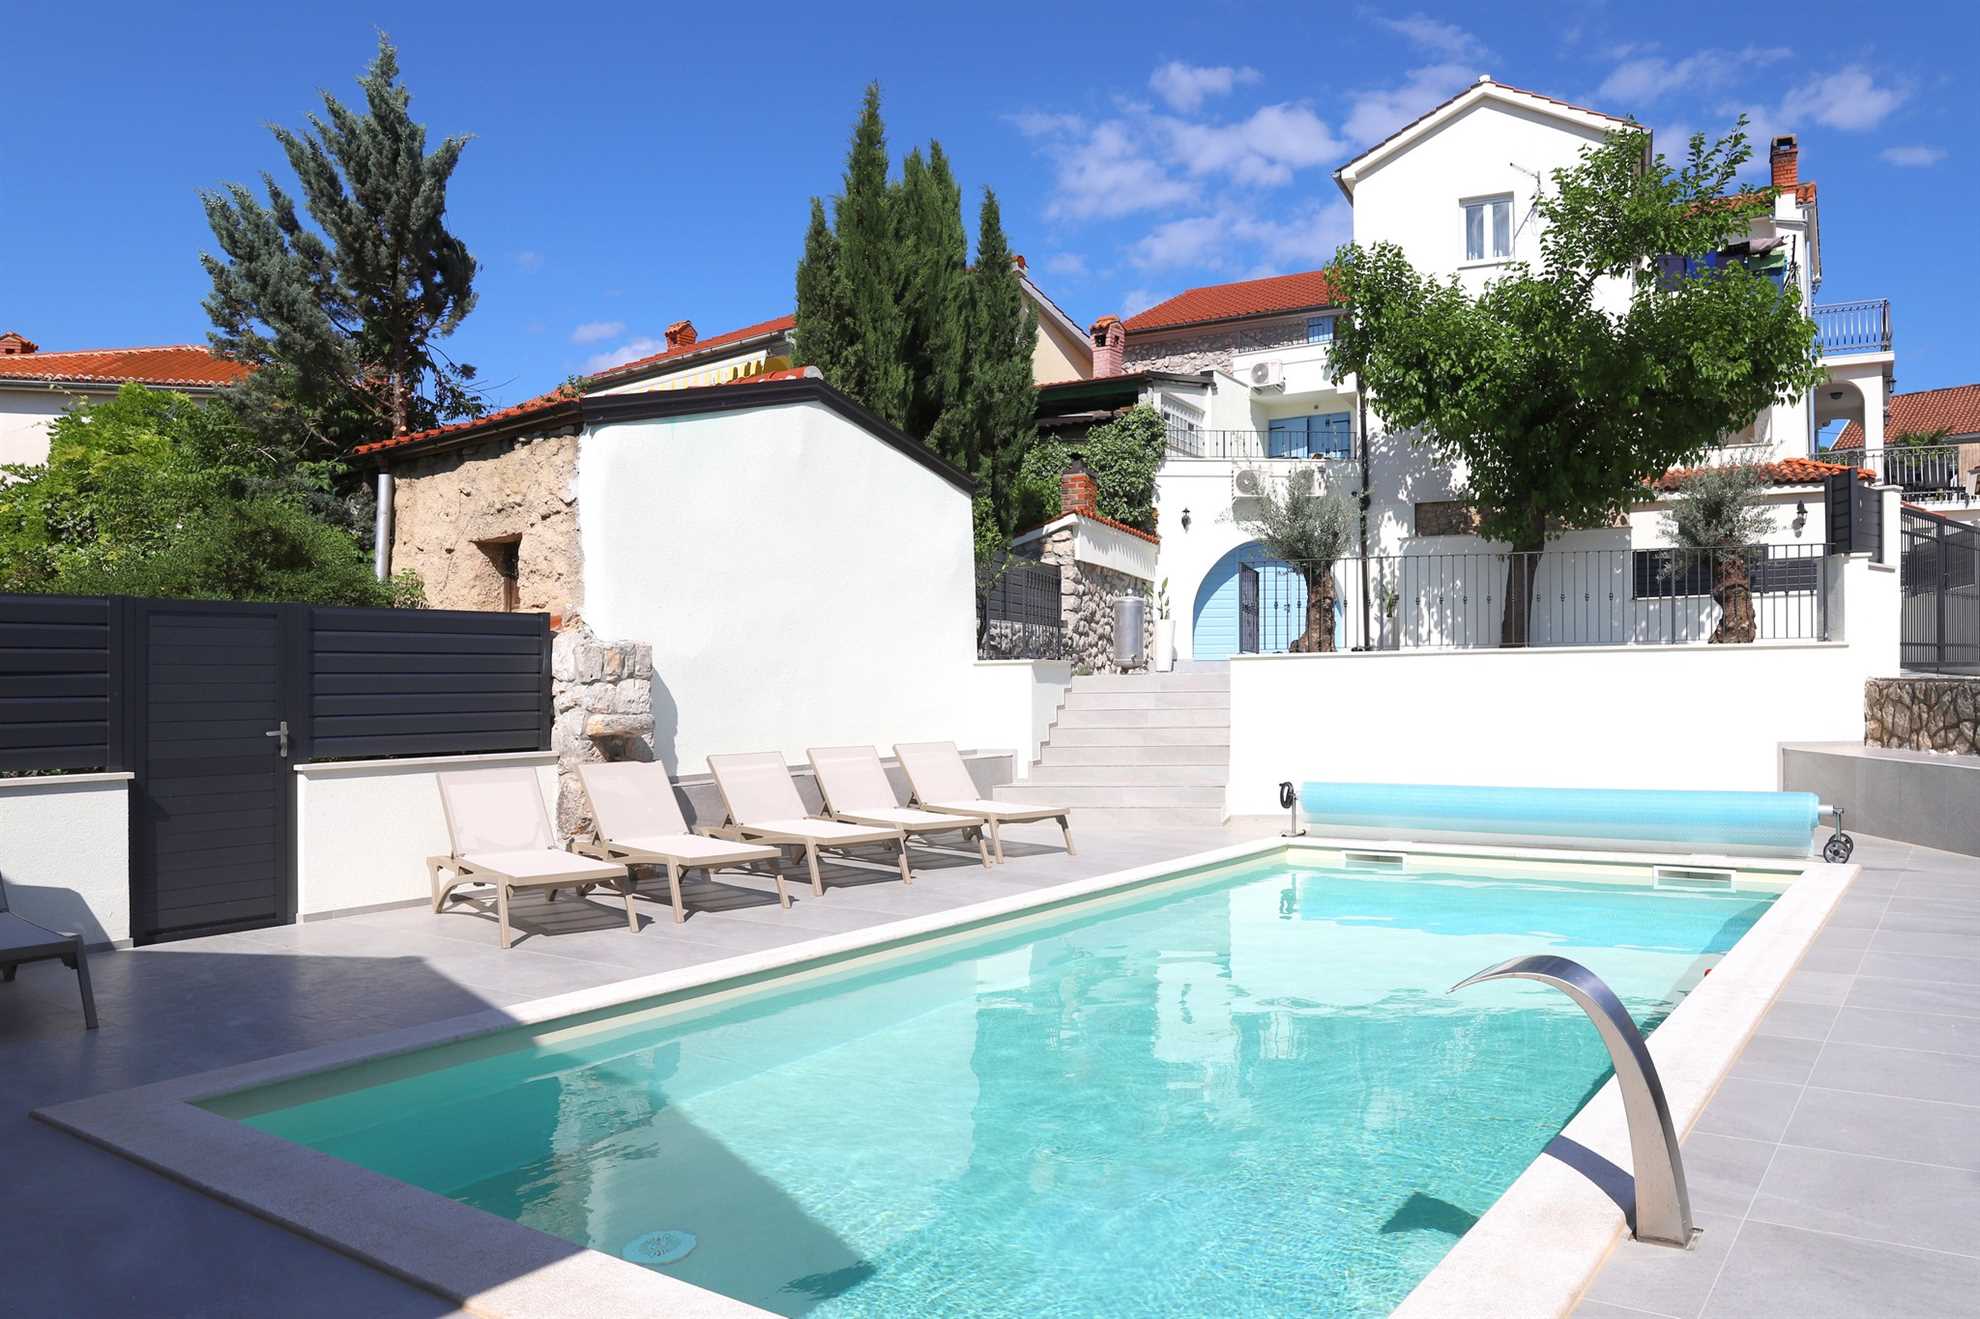 Villa Solaris s grijanim bazenom, saunom i ljetnom kuhinjom